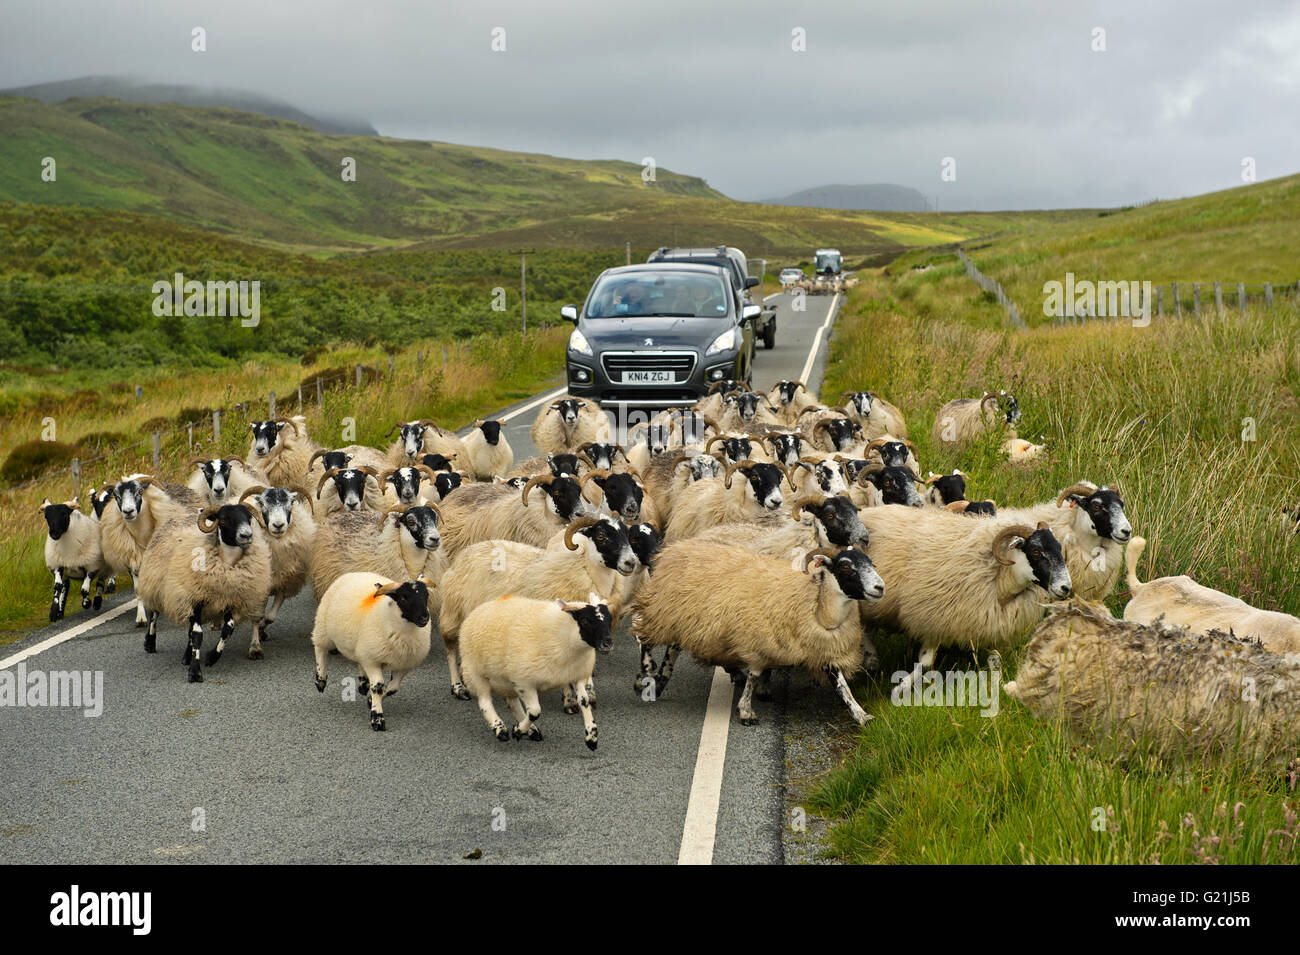 Troupeau de moutons Scottish Blackface bloque la circulation sur les routes de campagne, à l'île de Skye, Ecosse, Royaume-Uni Banque D'Images